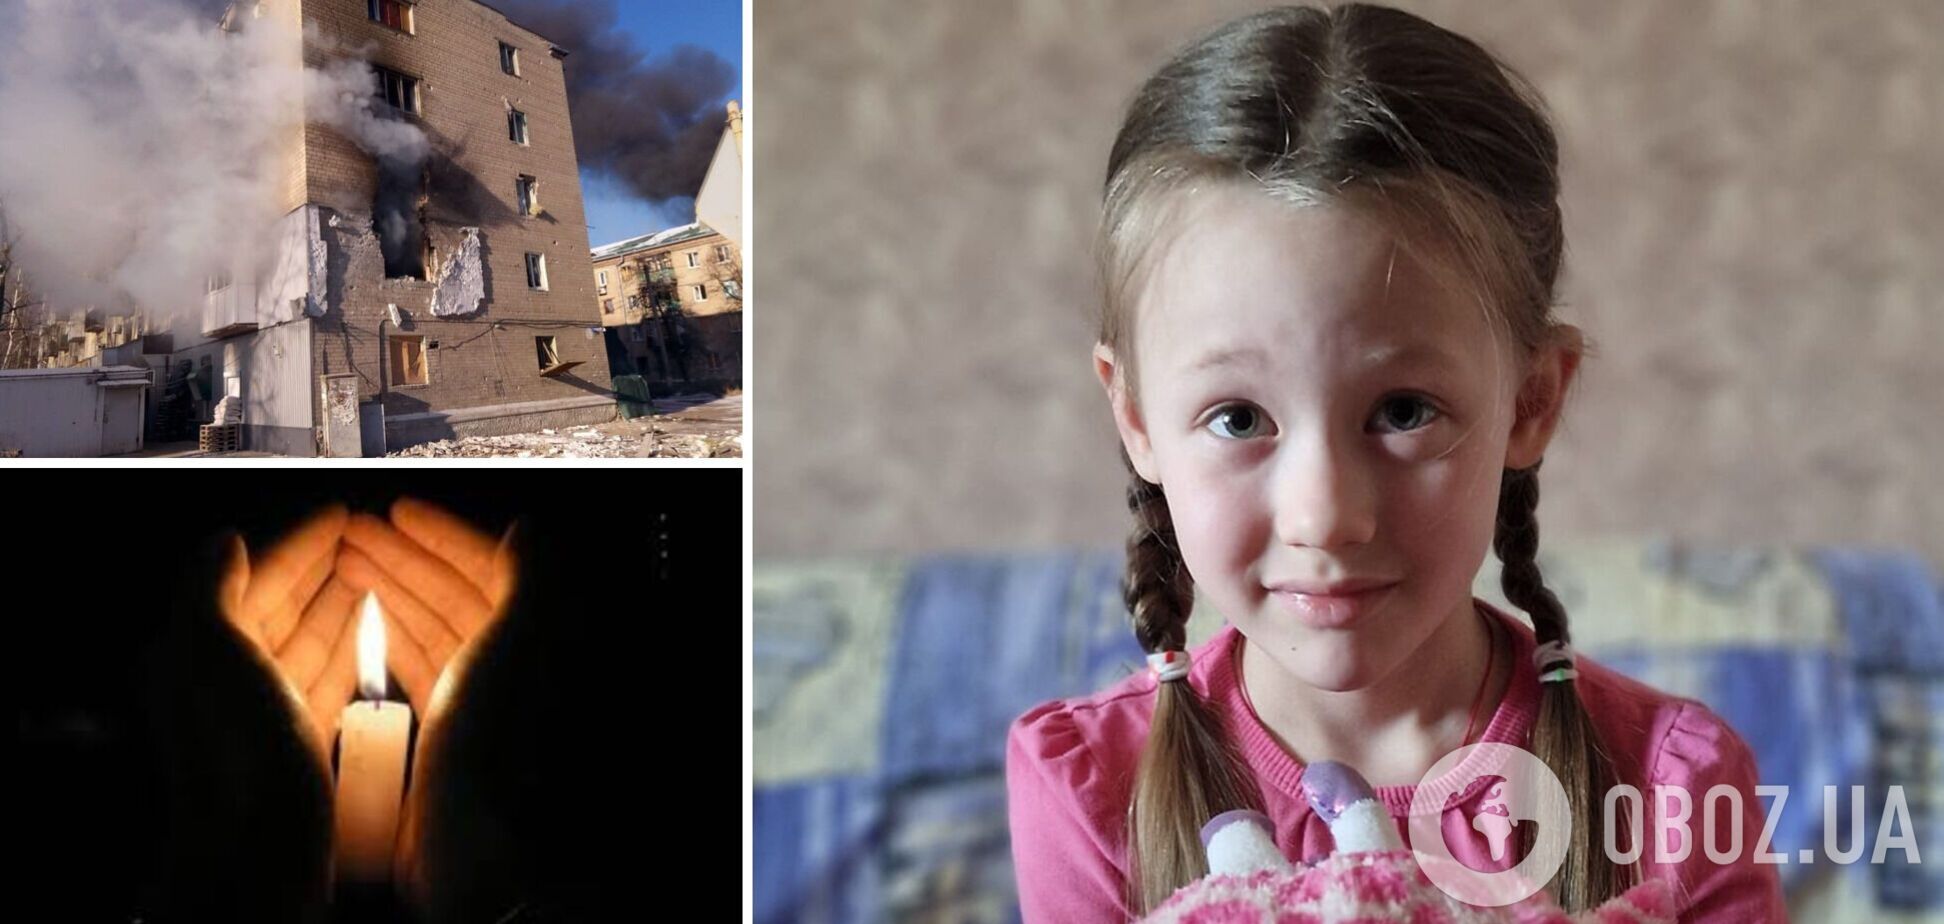 Родные 6-летней девочки не хотели покидать Авдеевку из-за старых родителей: подробности смерти Эли от сердечного приступа